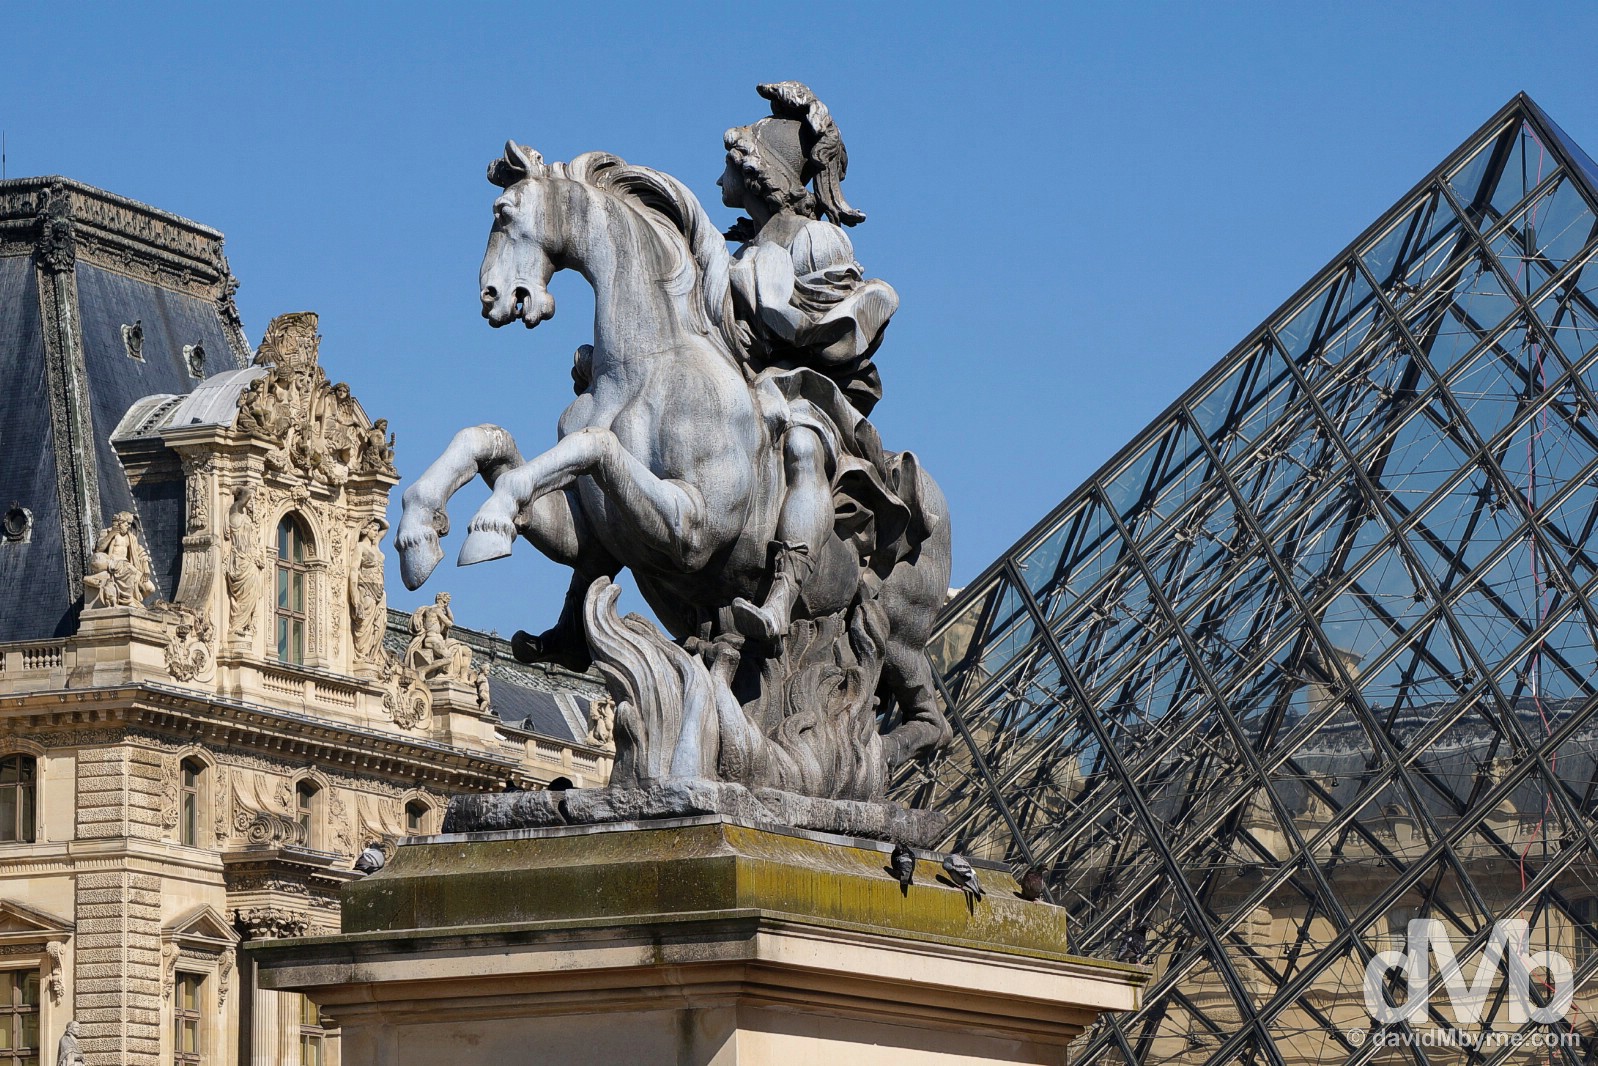 Cour Napoléon (the Napoleon Courtyard), Palace du Louvre, Paris, France. April 23, 2015.